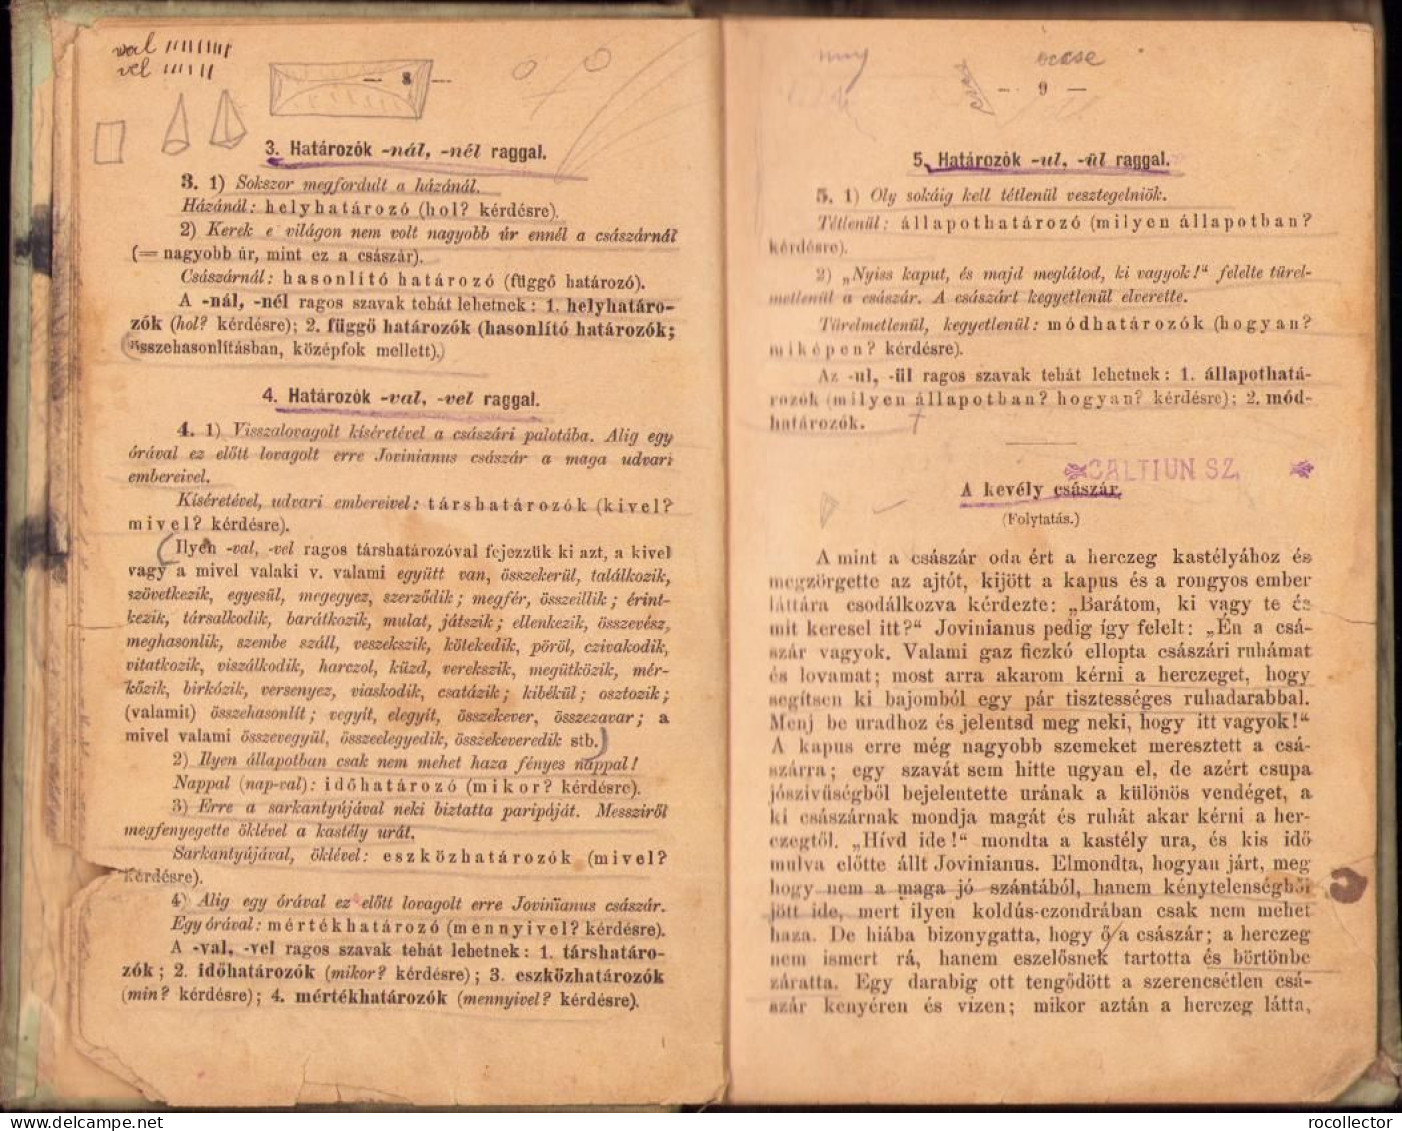 Iskolai magyar nyelvtan mondattani alapon irta Szinnyei Jozsef, második rész, 1894, Budapest C1455